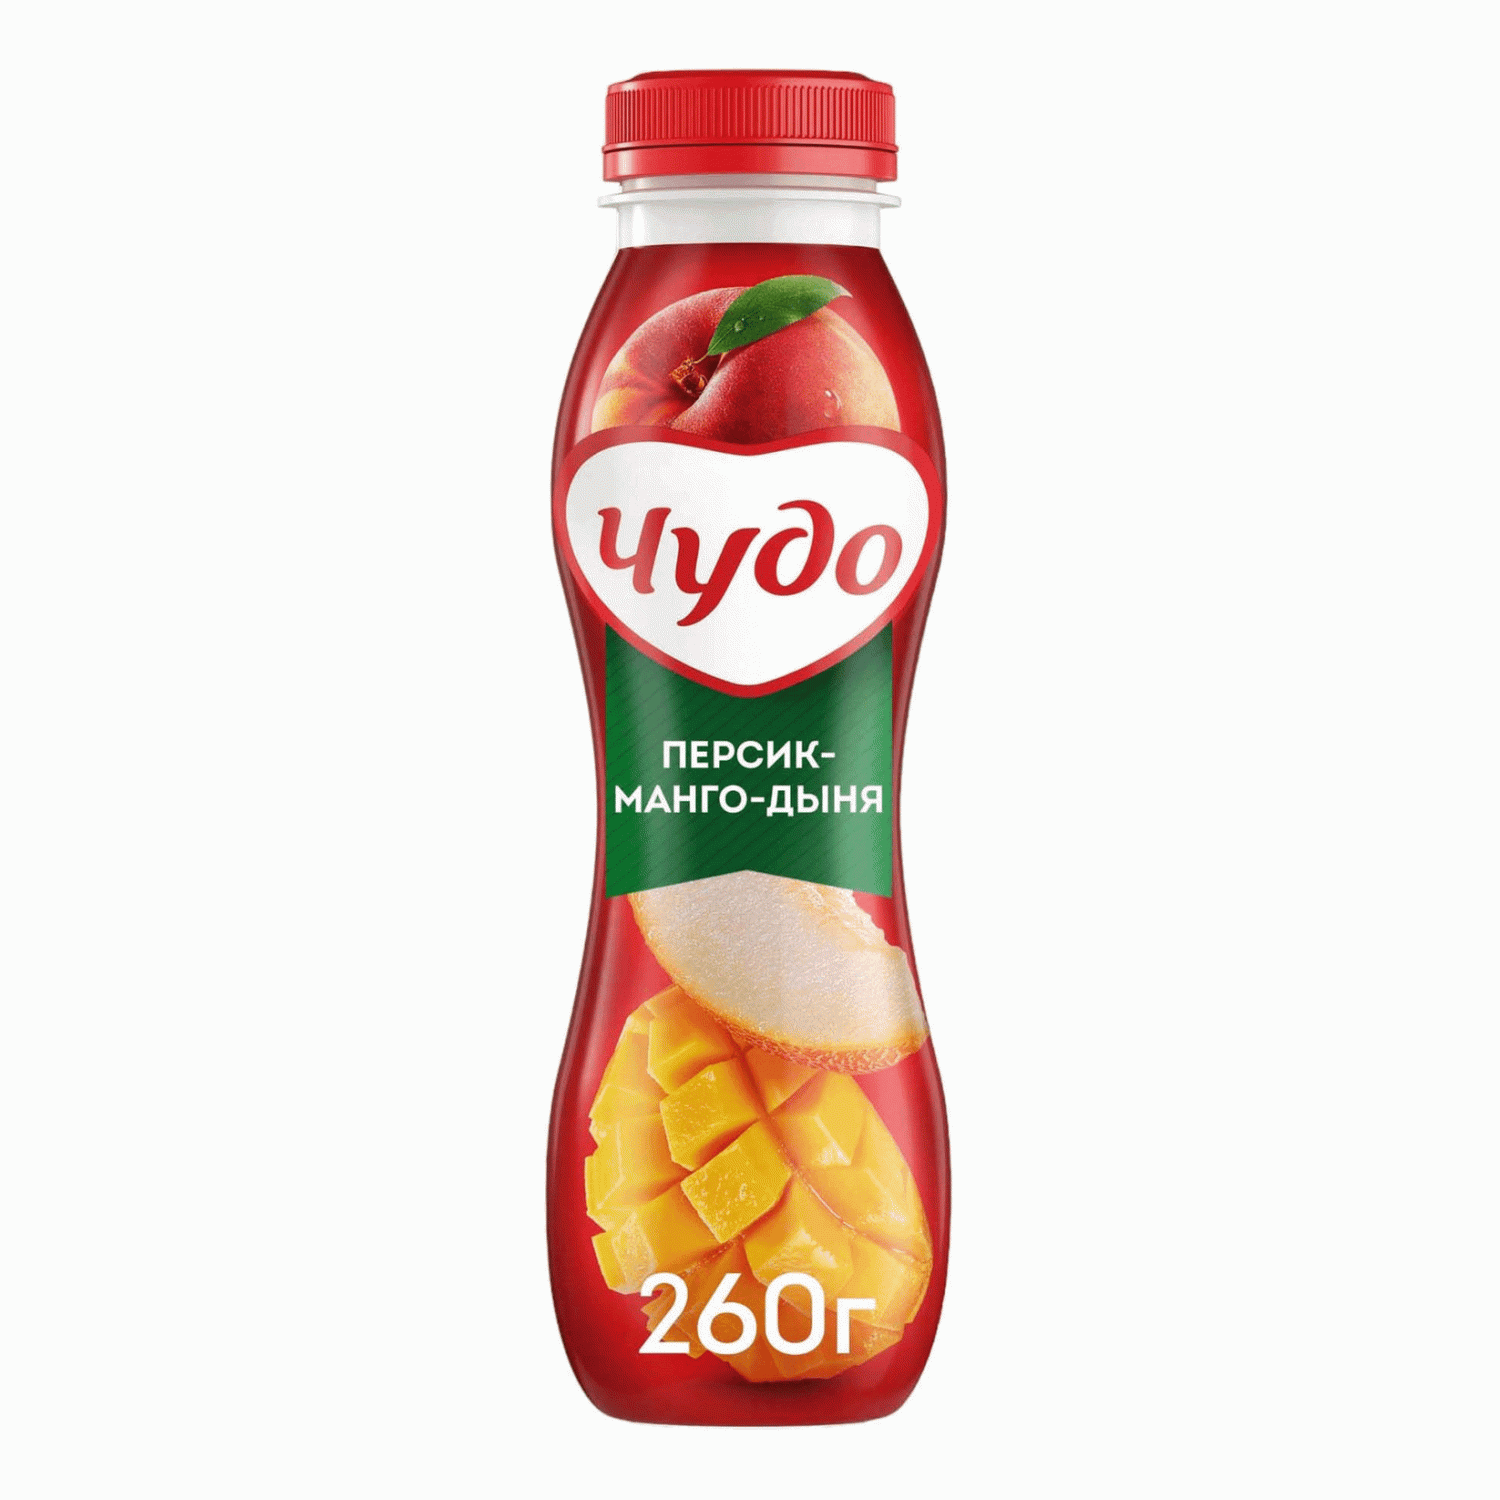 Купить йогурт питьевой Чудо персик-манго-дыня 1,9% БЗМЖ 260 г, цены в  Москве на Мегамаркет | Артикул: 100050693642